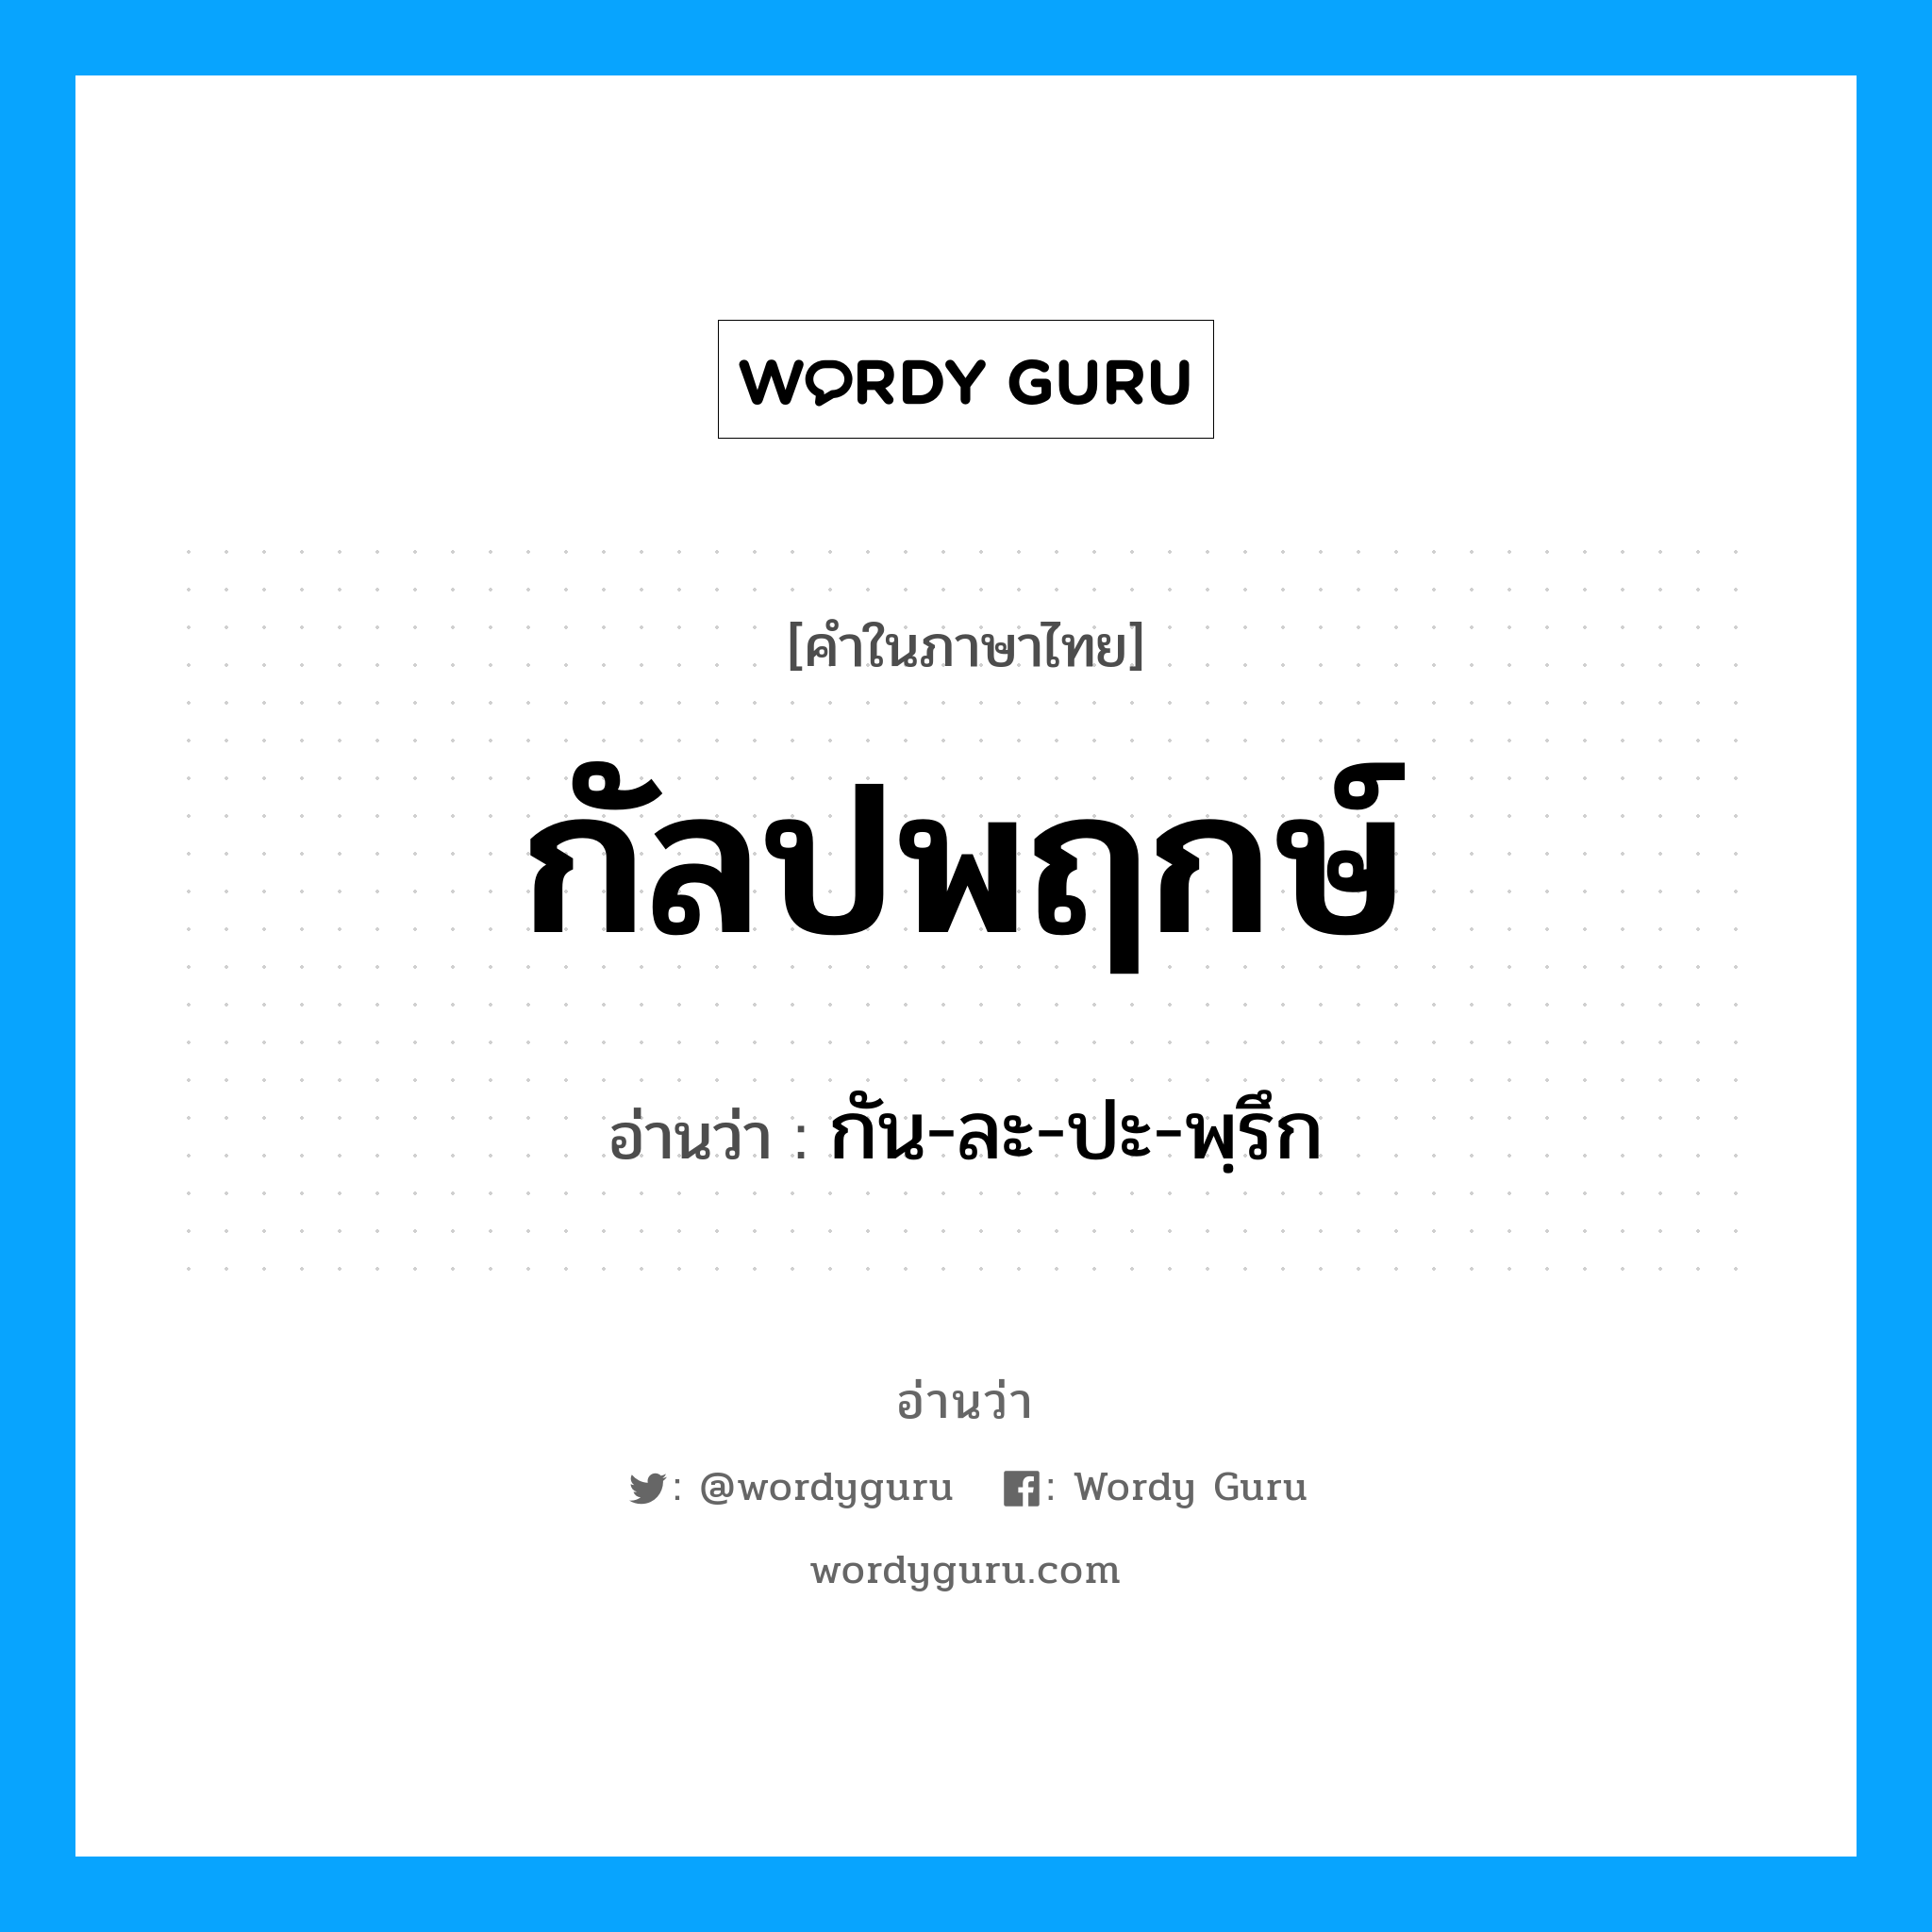 กัน-ละ-ปะ-พฺรึก เป็นคำอ่านของคำไหน?, คำในภาษาไทย กัน-ละ-ปะ-พฺรึก อ่านว่า กัลปพฤกษ์